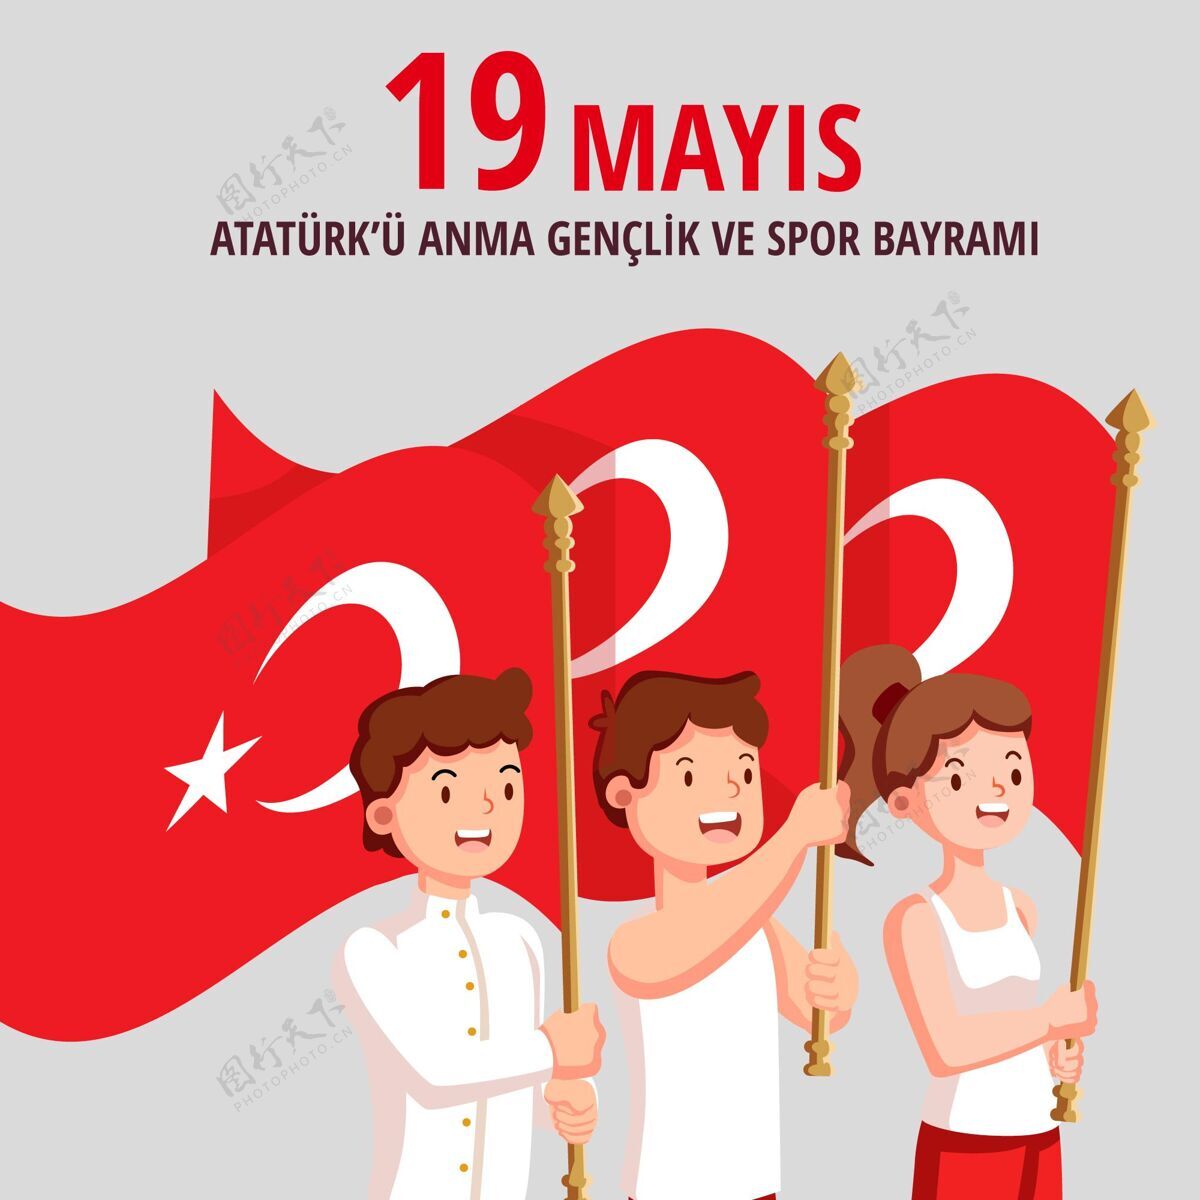 土耳其国旗有机平面土耳其纪念阿塔图尔克 青年和体育日插图5月19日平面平面设计